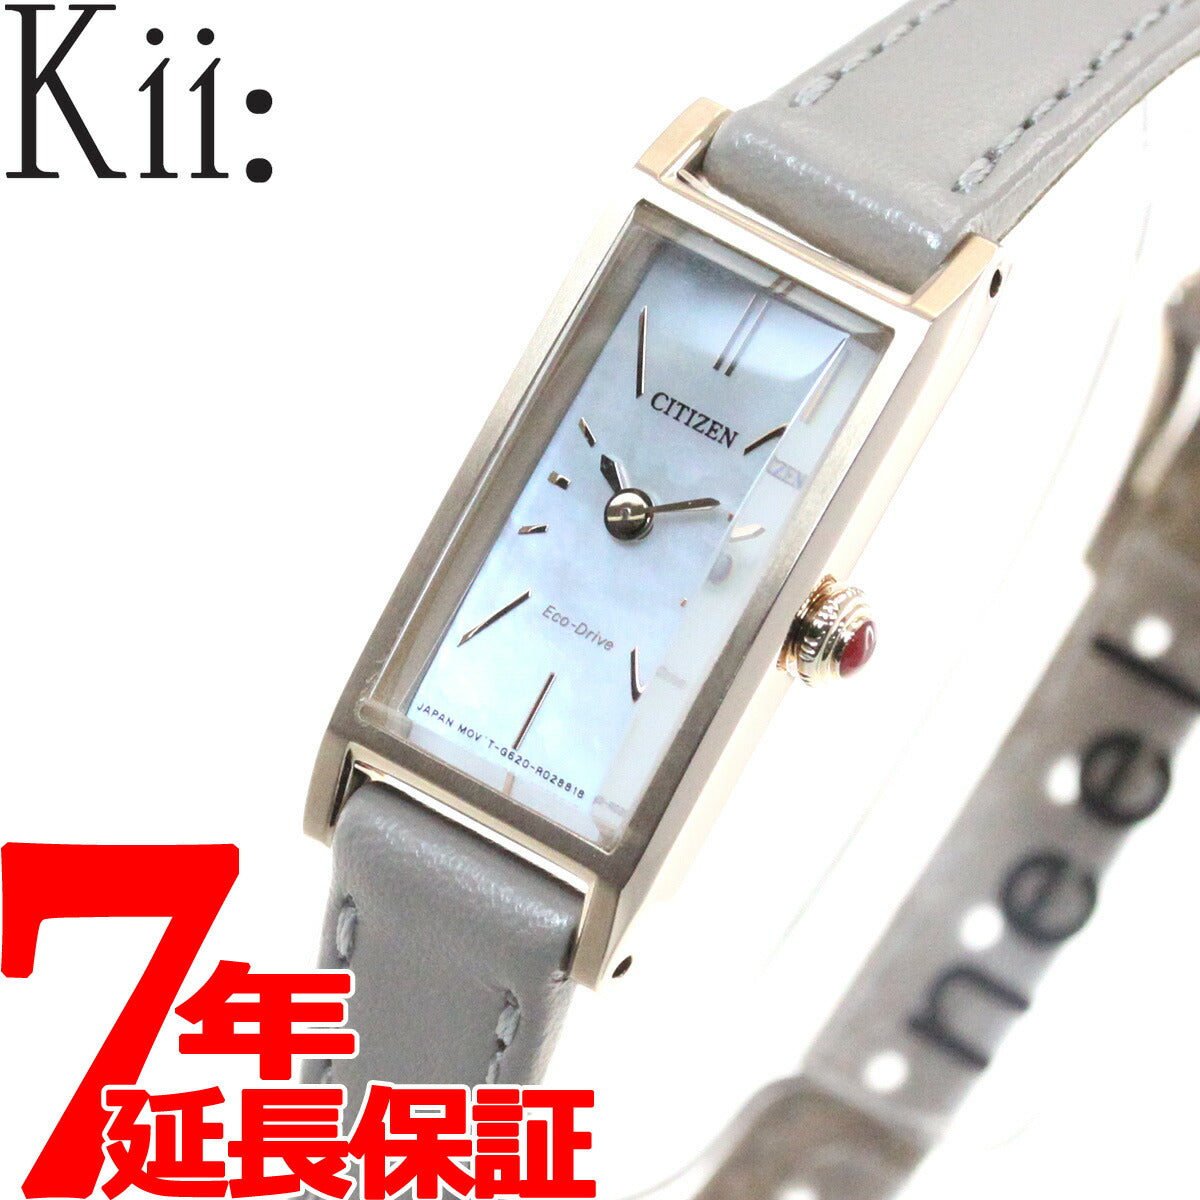 [シチズン]キー Kii: エコドライブ ネット流通限定モデル 腕時計 レディー